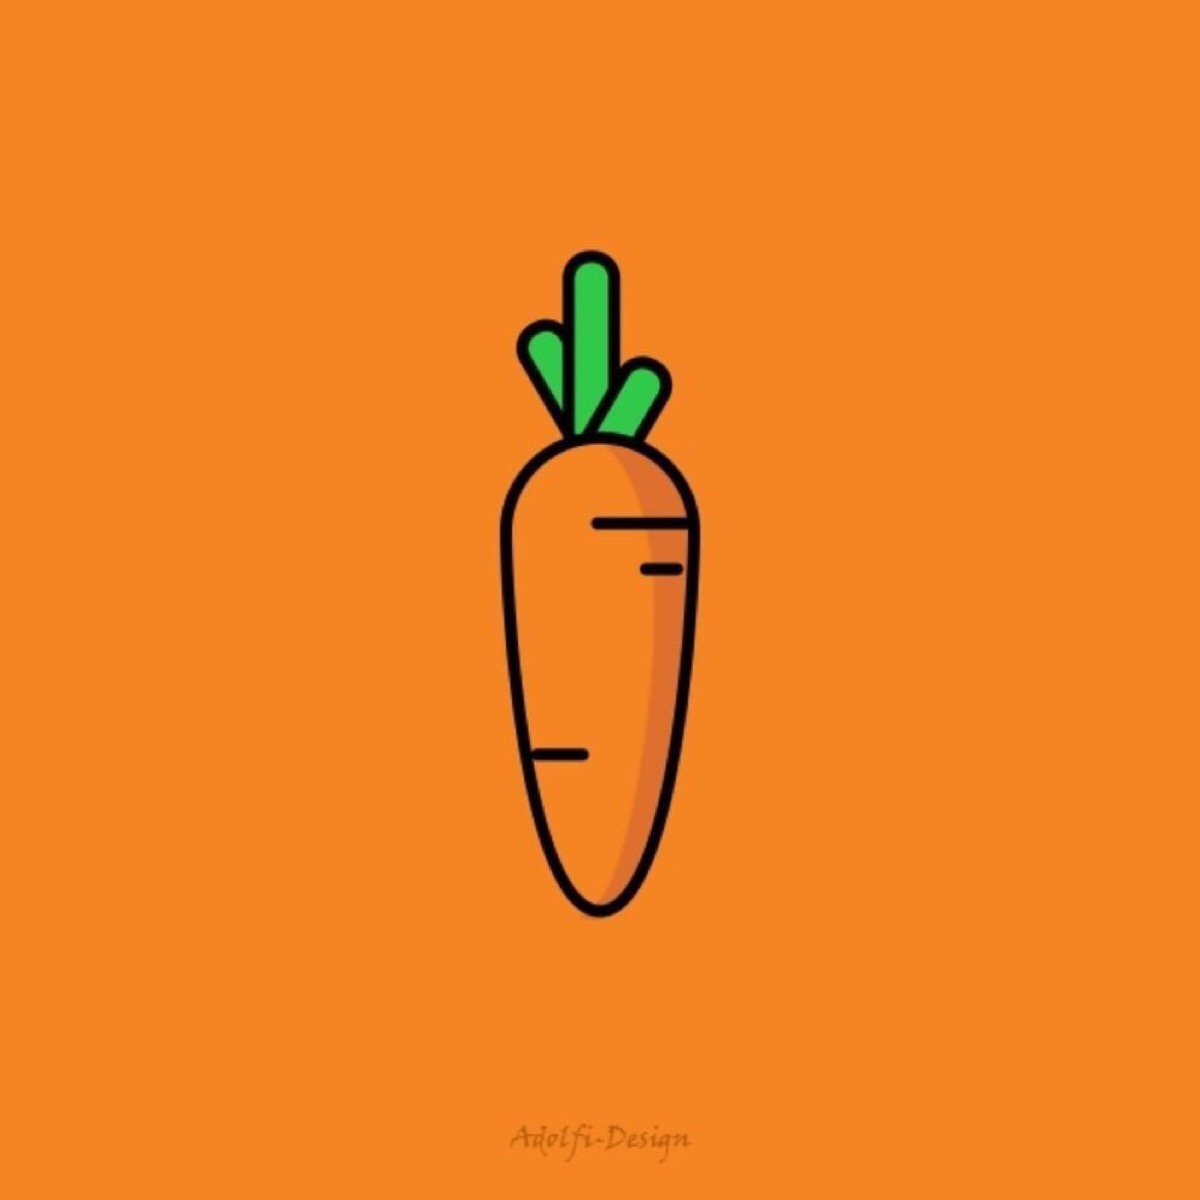 所以,请给我一根胡萝卜